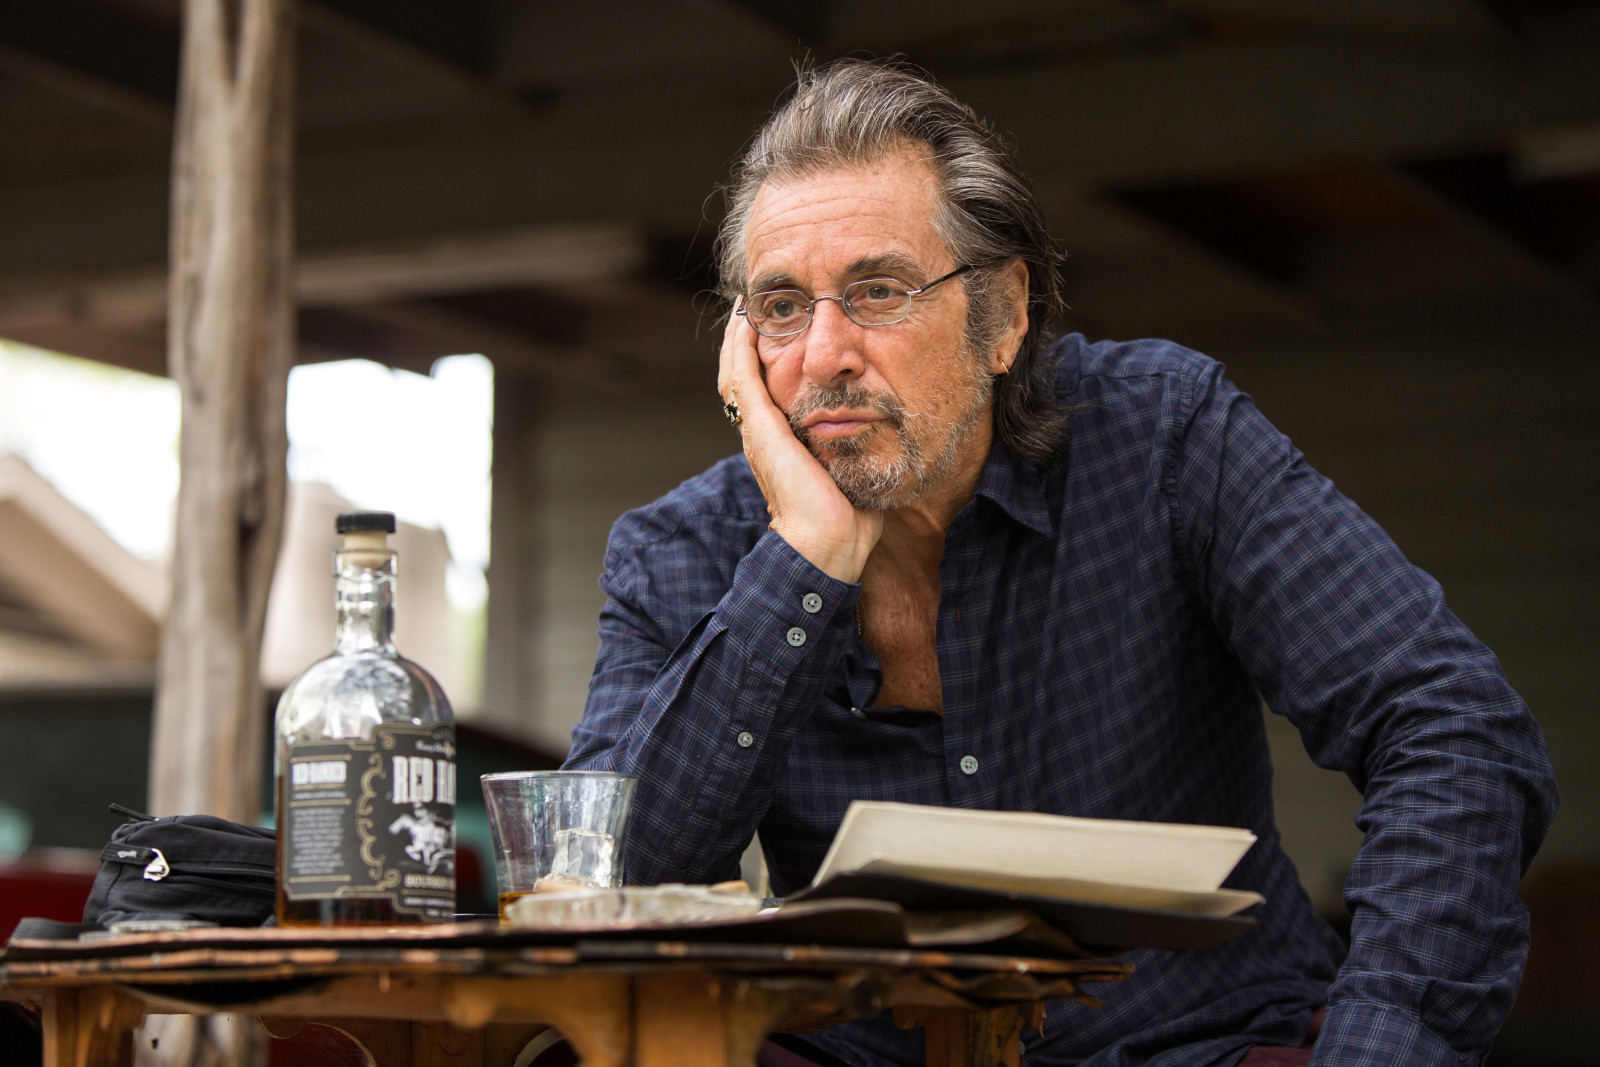 khung, bàn, cốc thủy tinh, kính, diễn viên, chai, áo sơ mi, Al Pacino